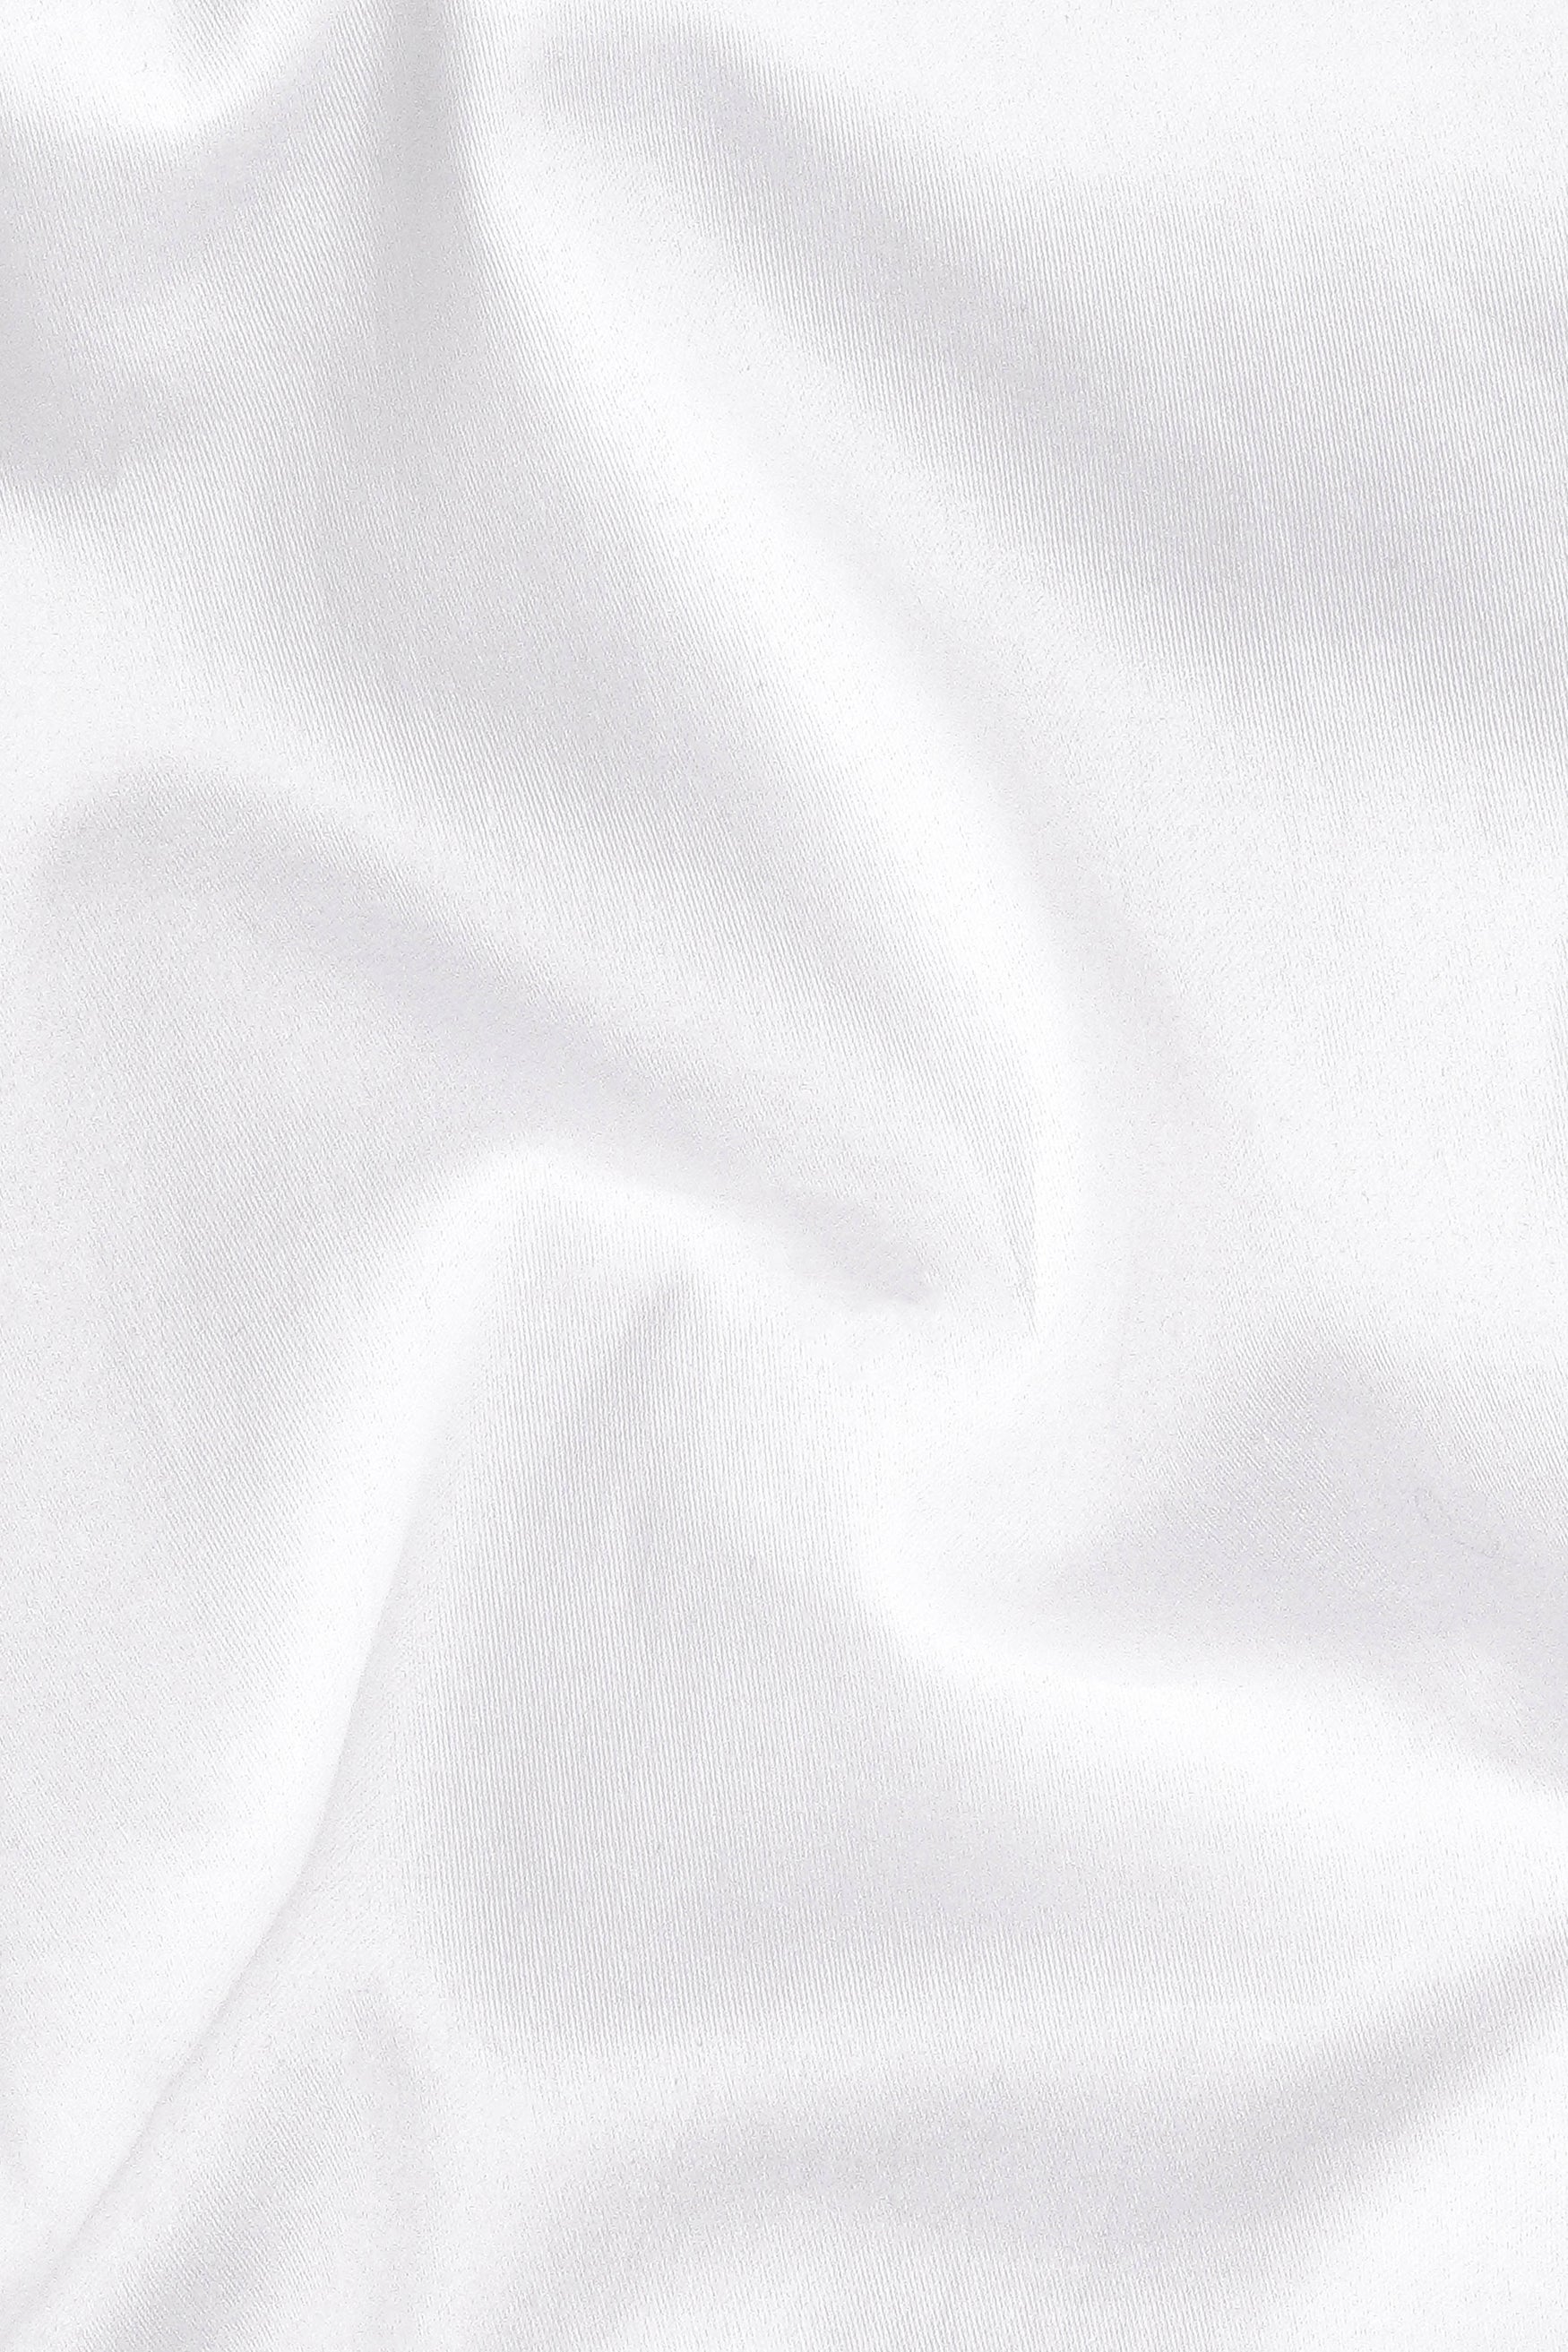 Bright White Subtle Sheen Super Soft Premium Cotton Kurta